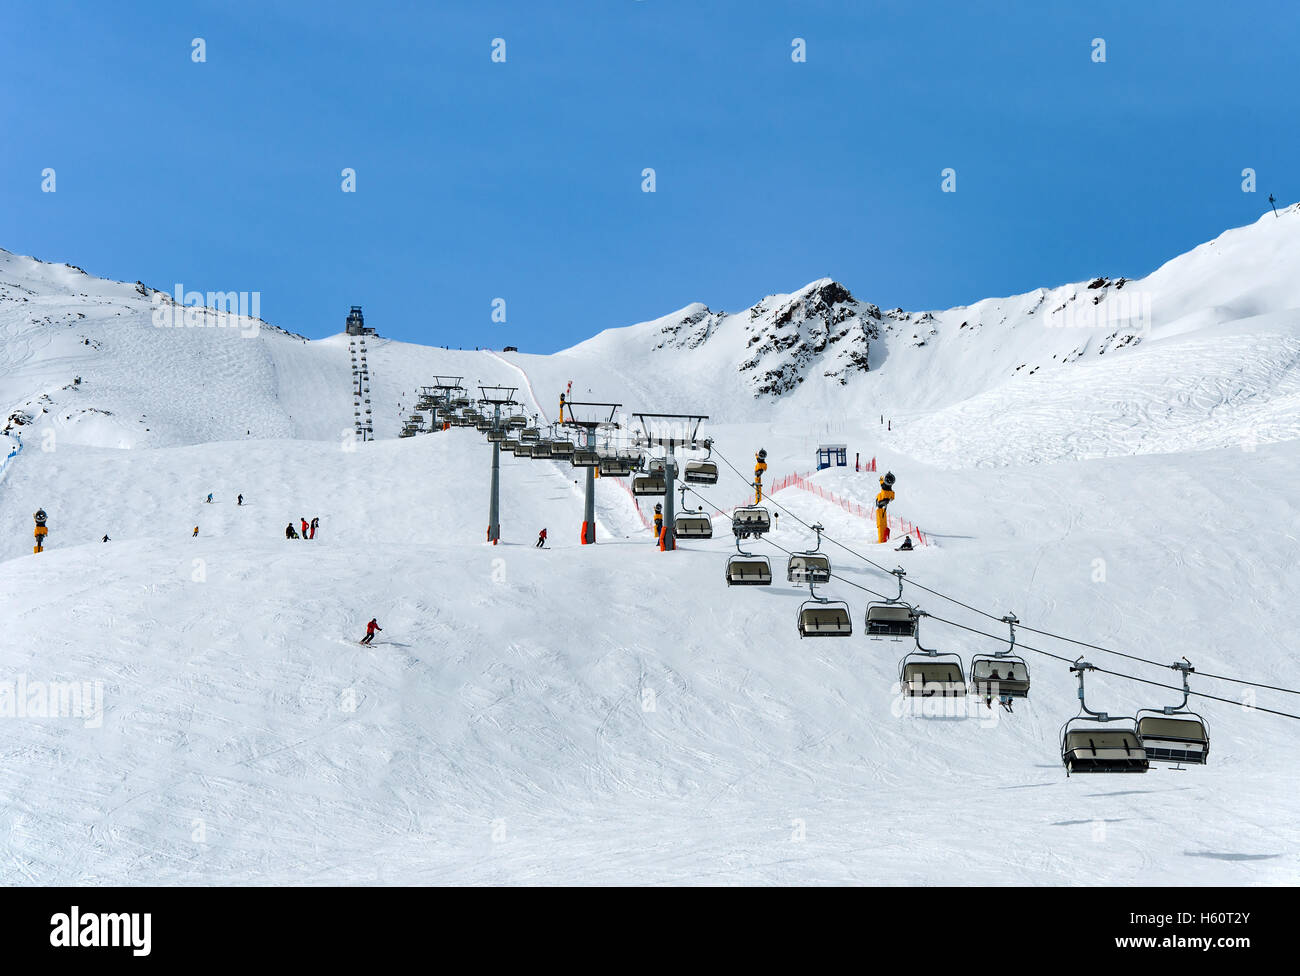 Ski- und Sessellift im alpinen Skigebiet Sölden im Ötztal Alpen, Tirol, Österreich Stockfoto